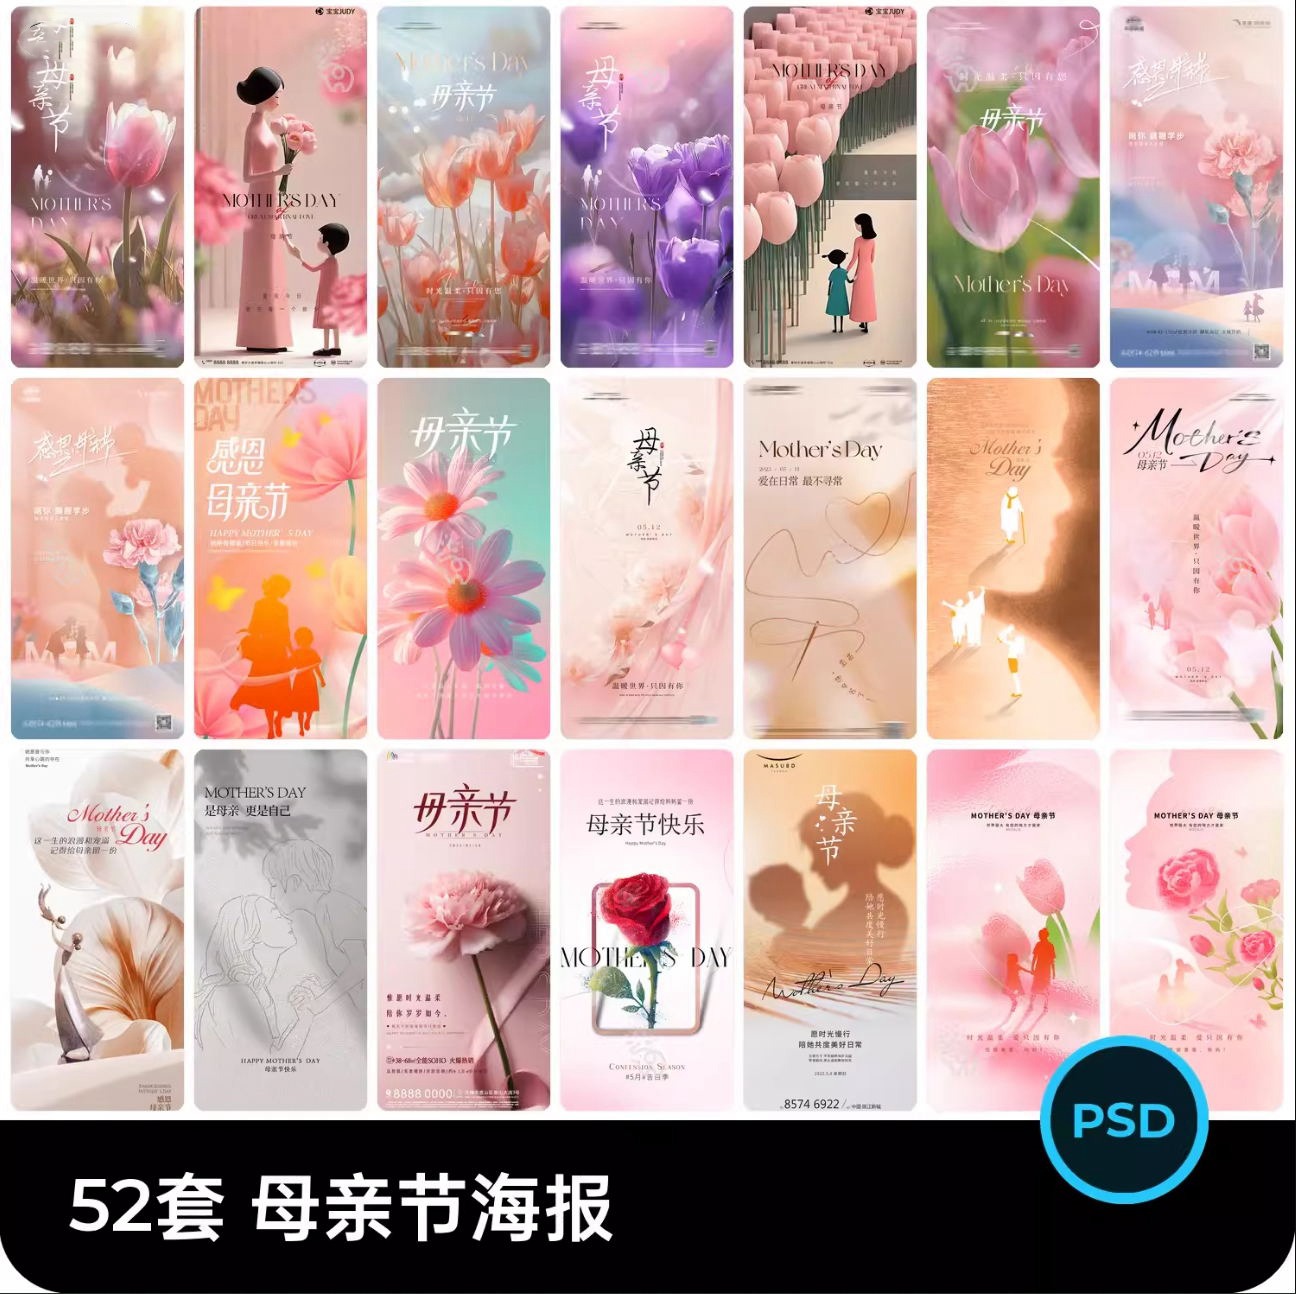 52套 母亲节节日节庆海报模板PSD设计素材 , 第1张